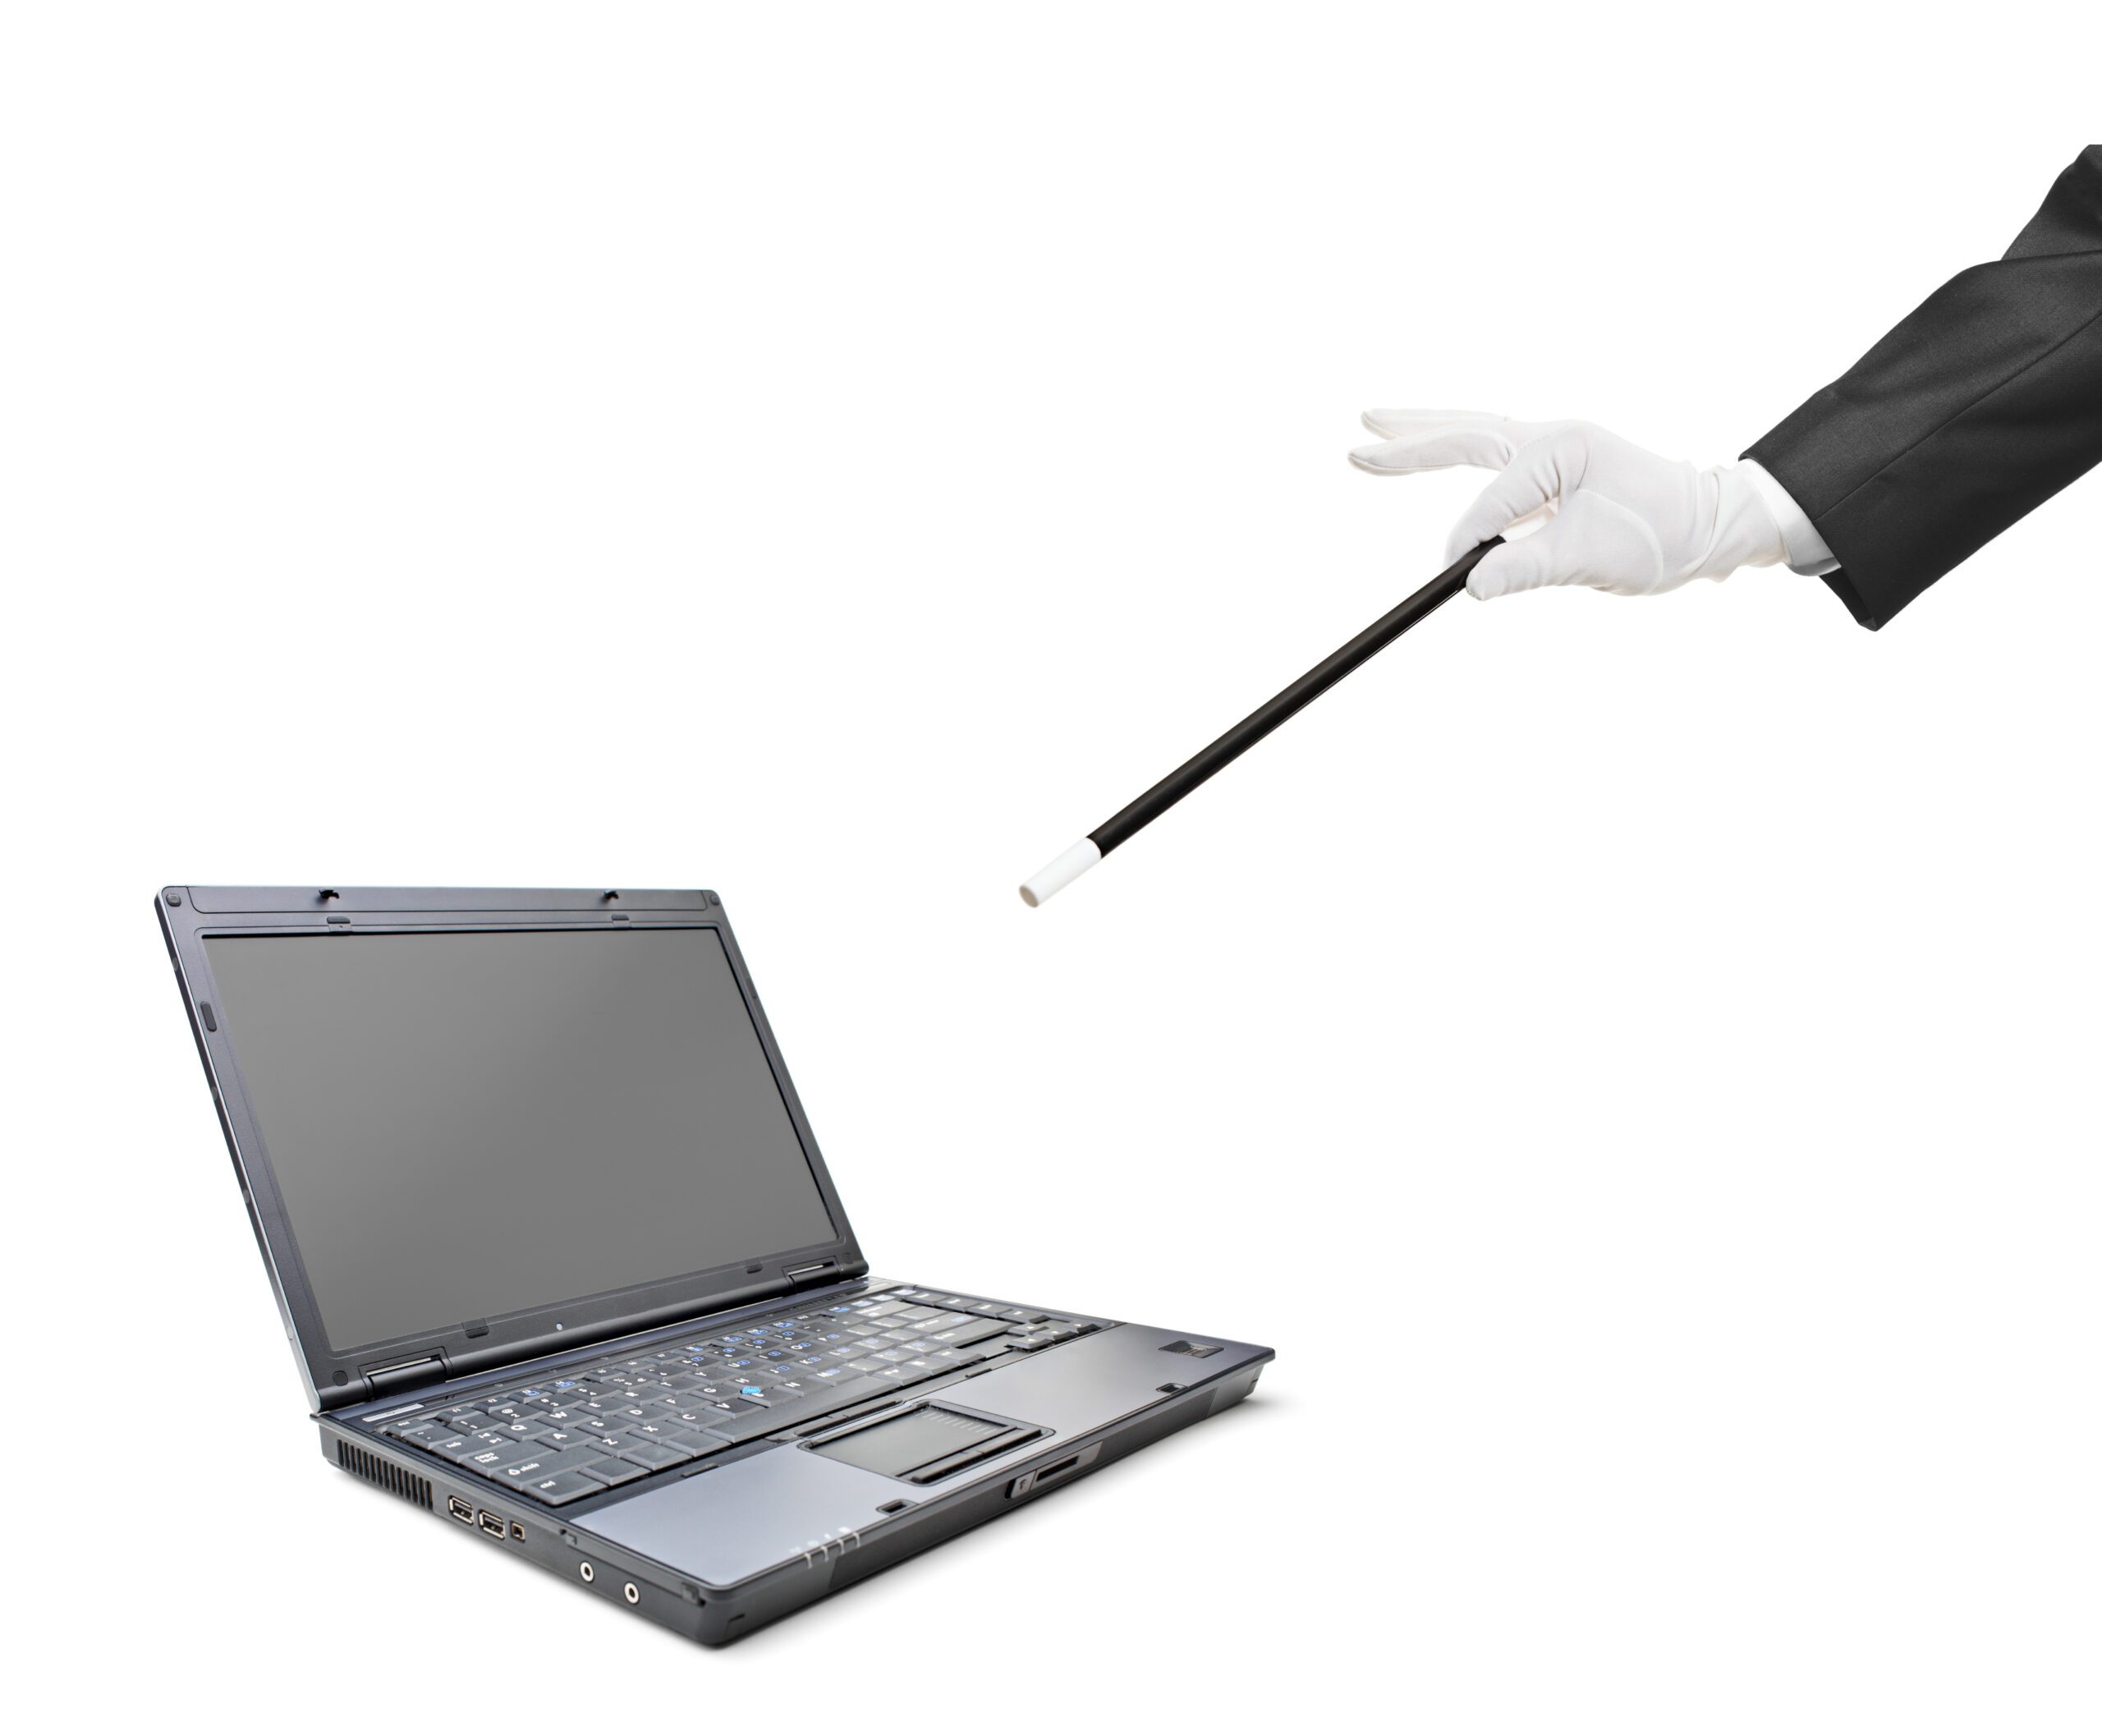 waving a wand at a laptop